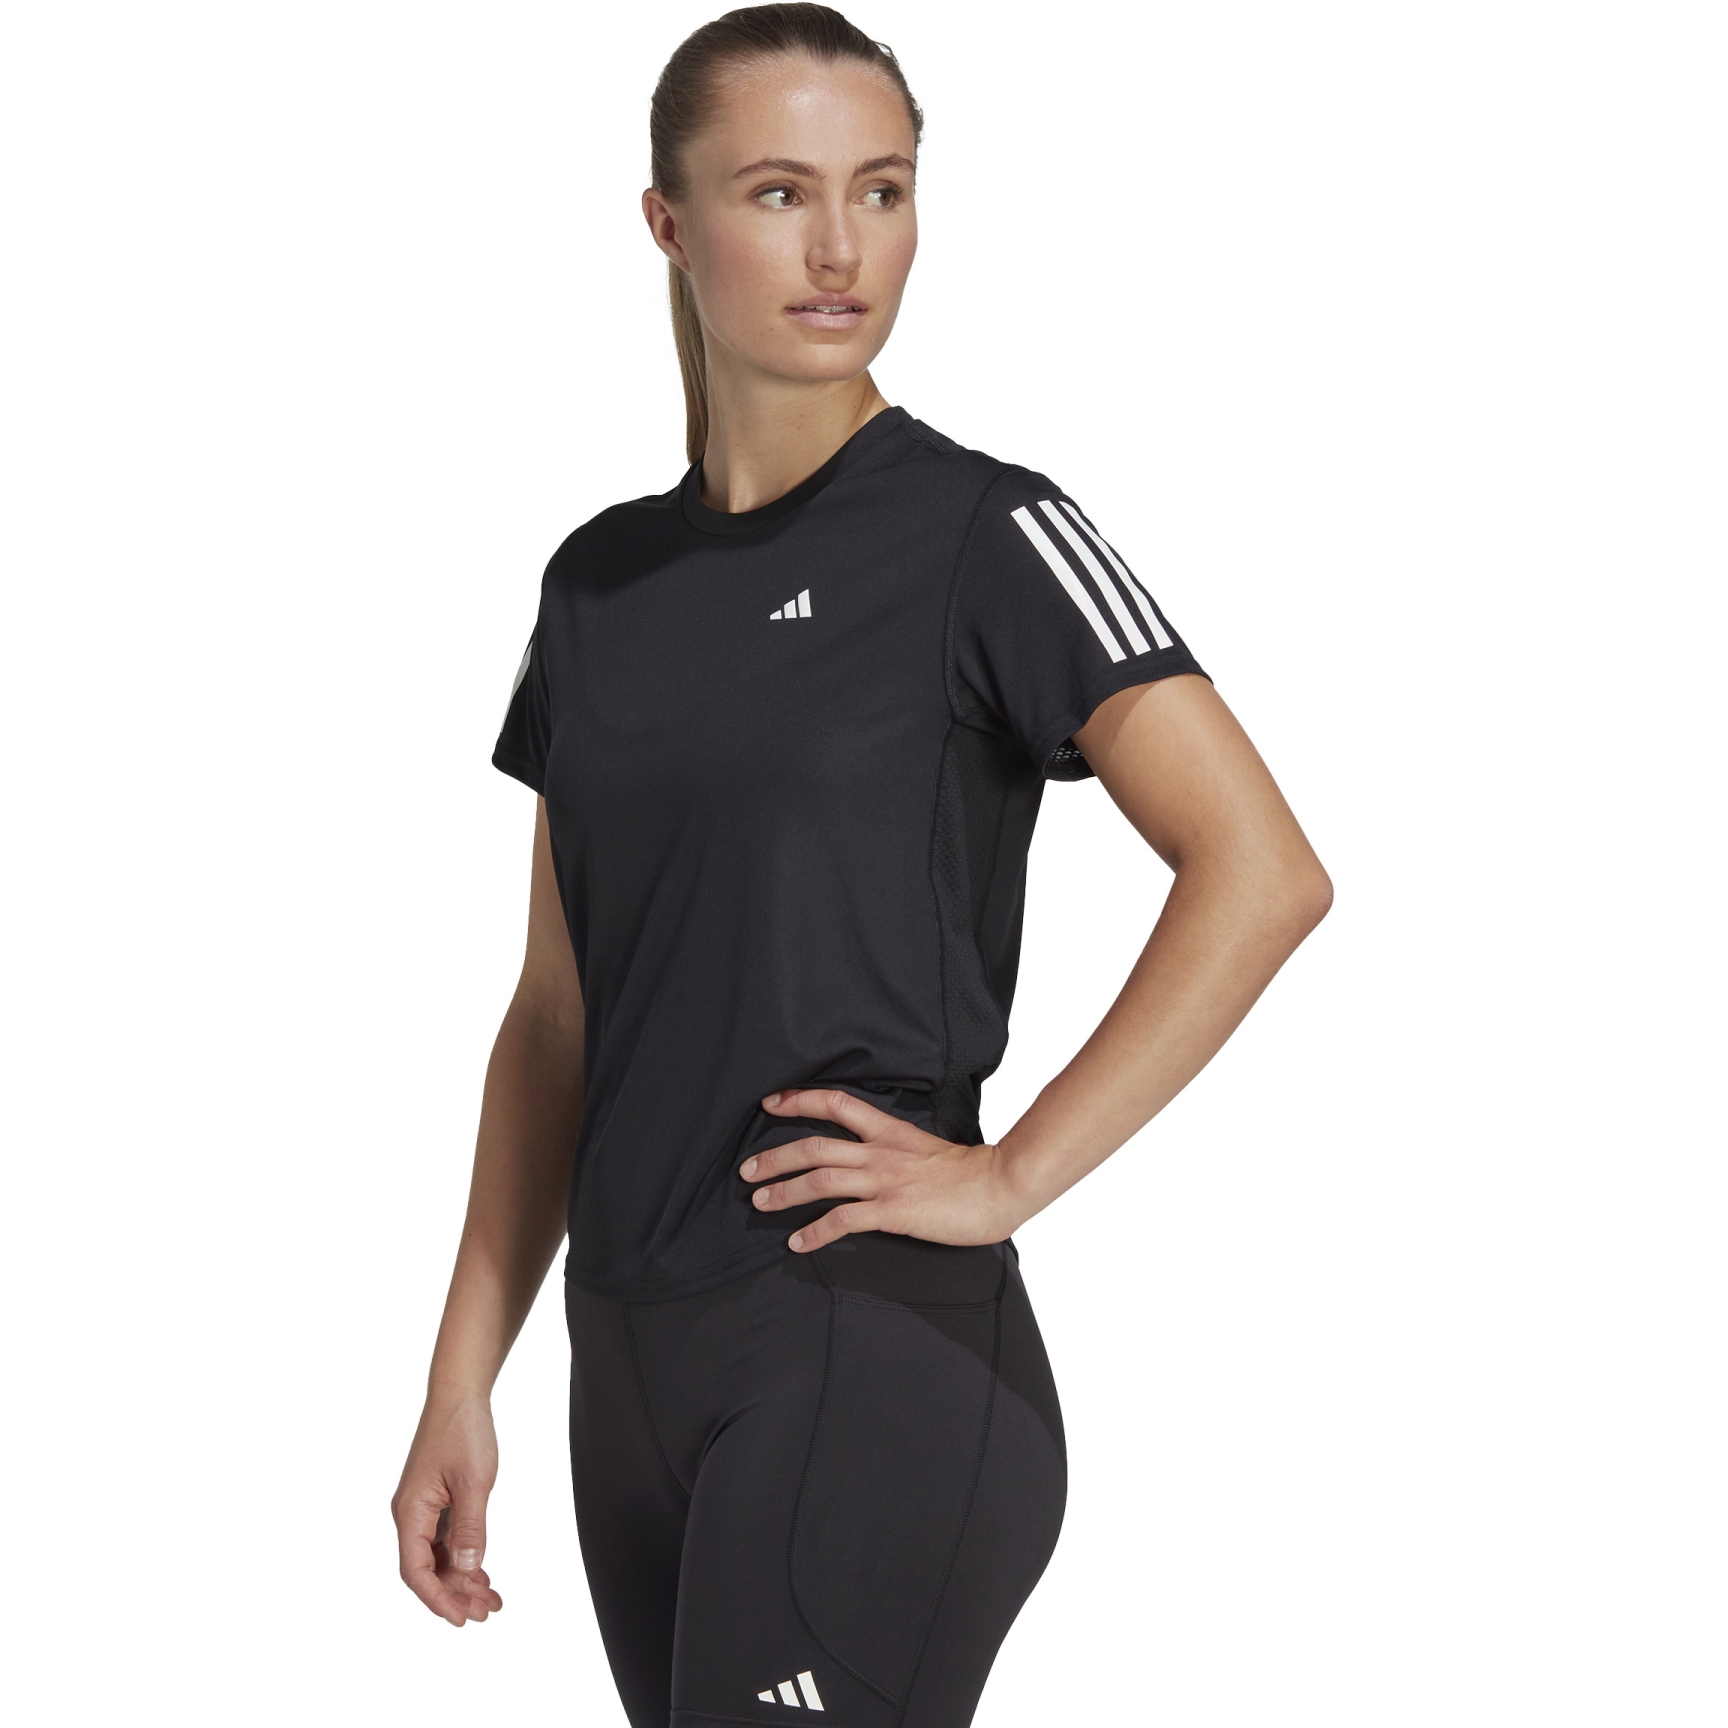 Produktbild von adidas Own The Run Laufshirt Damen - schwarz IC5188